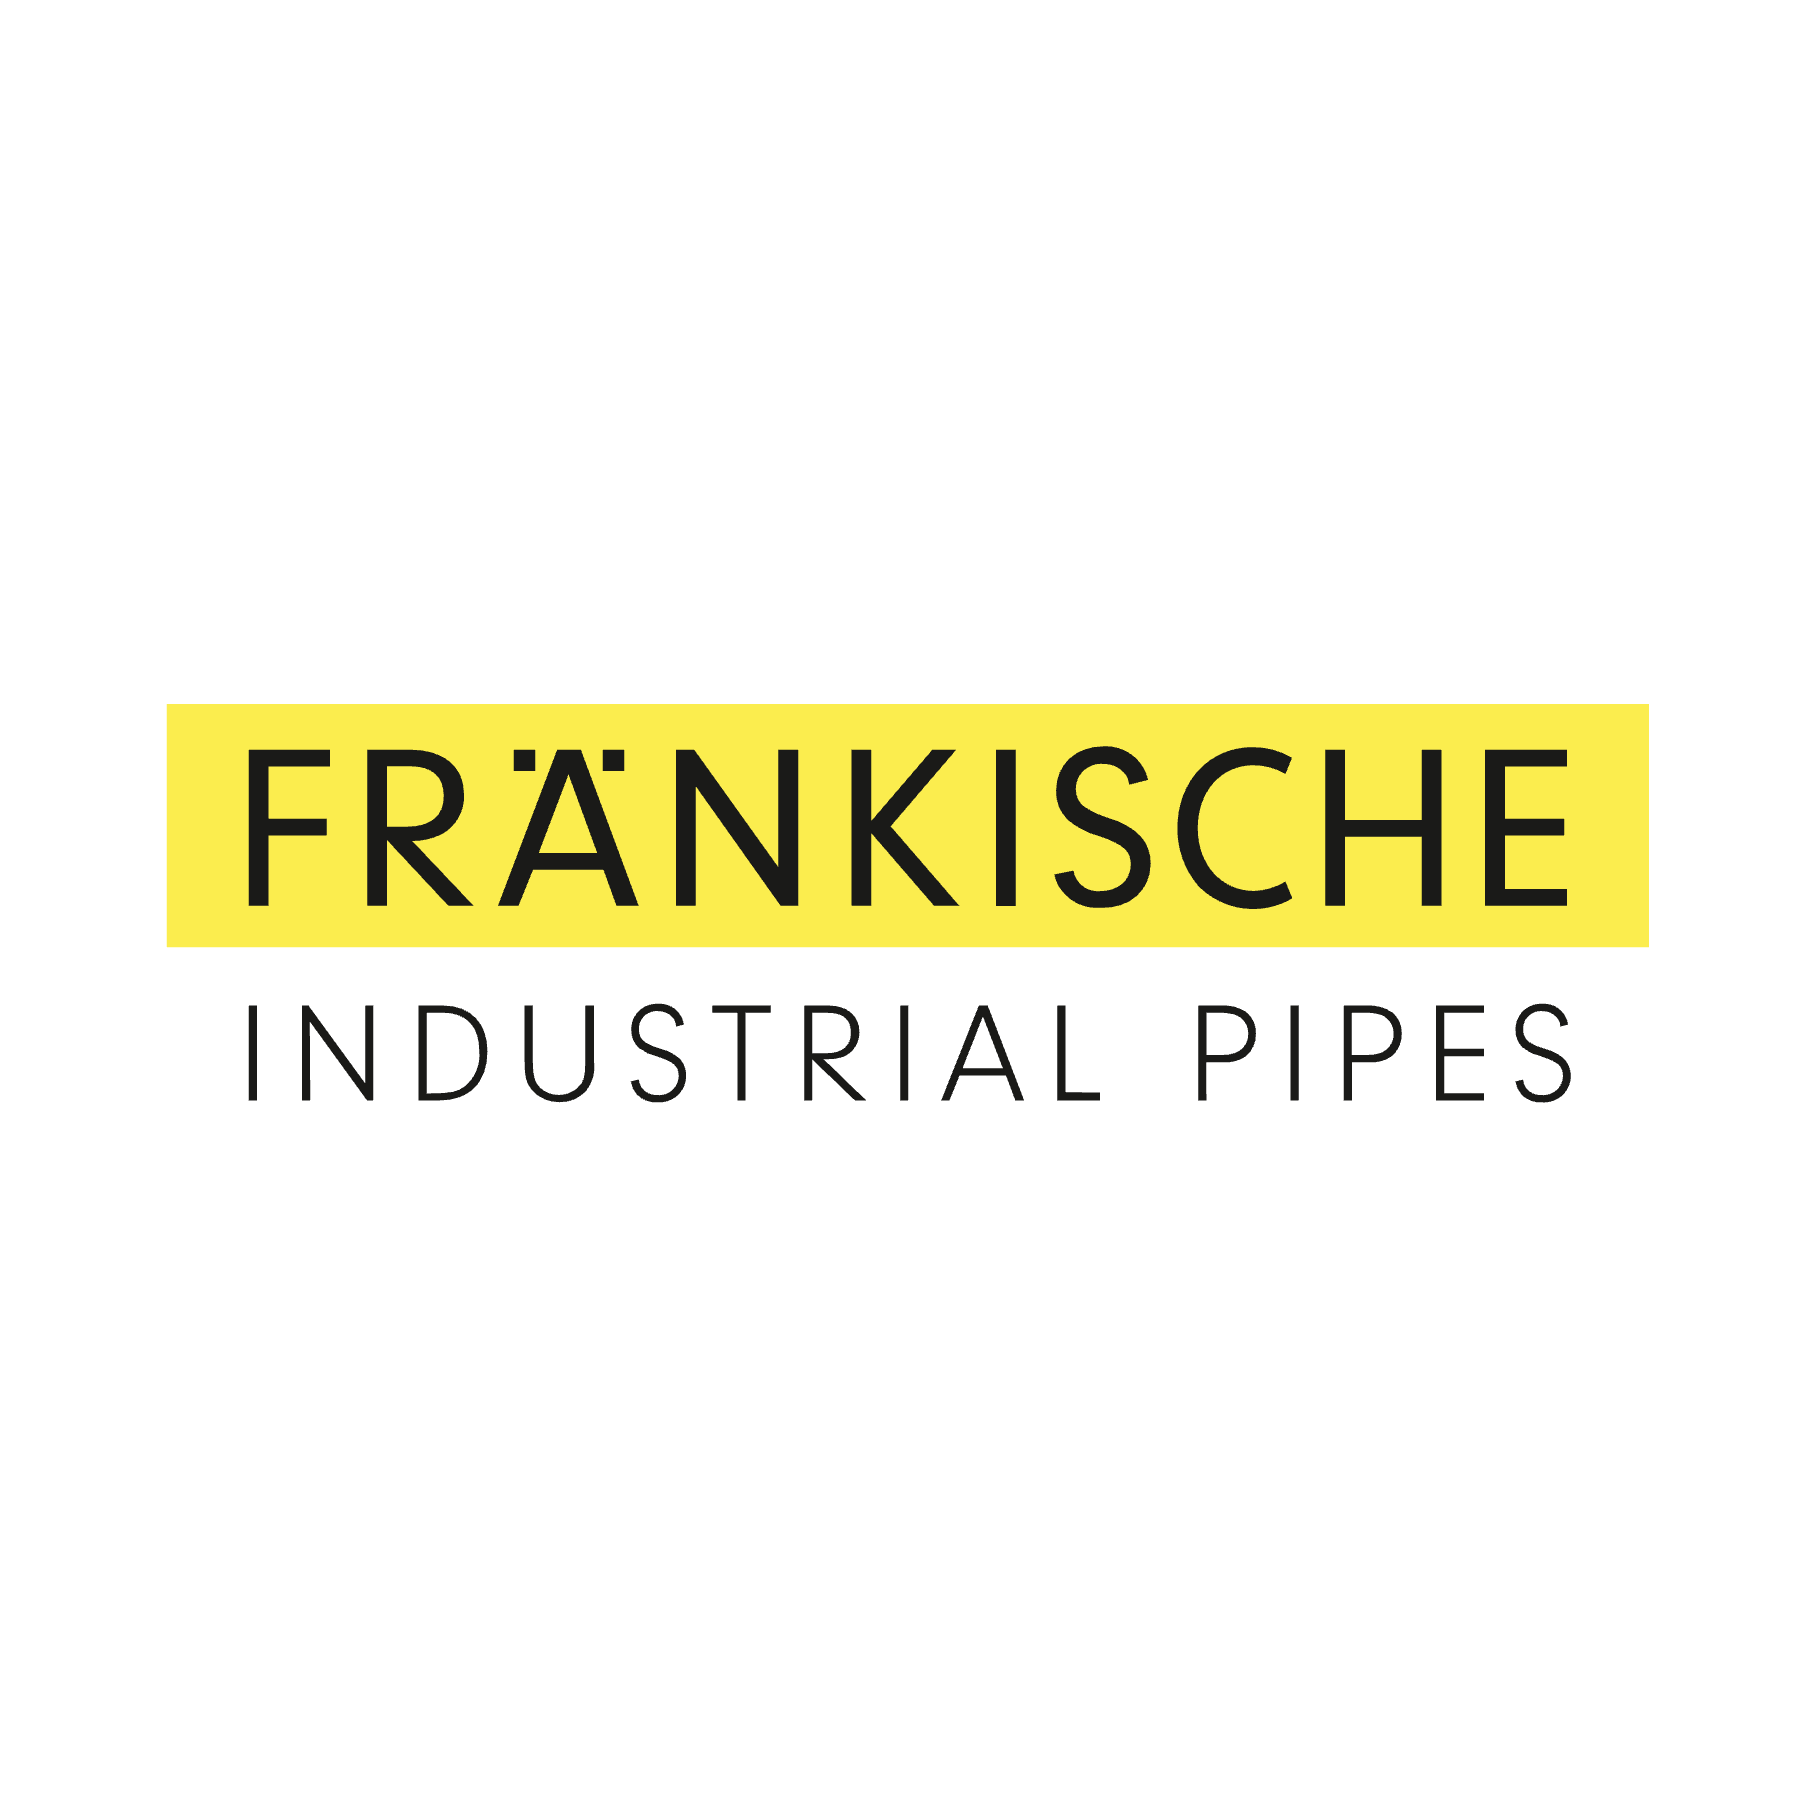 FRÄNKISCHE Industrial Pipes